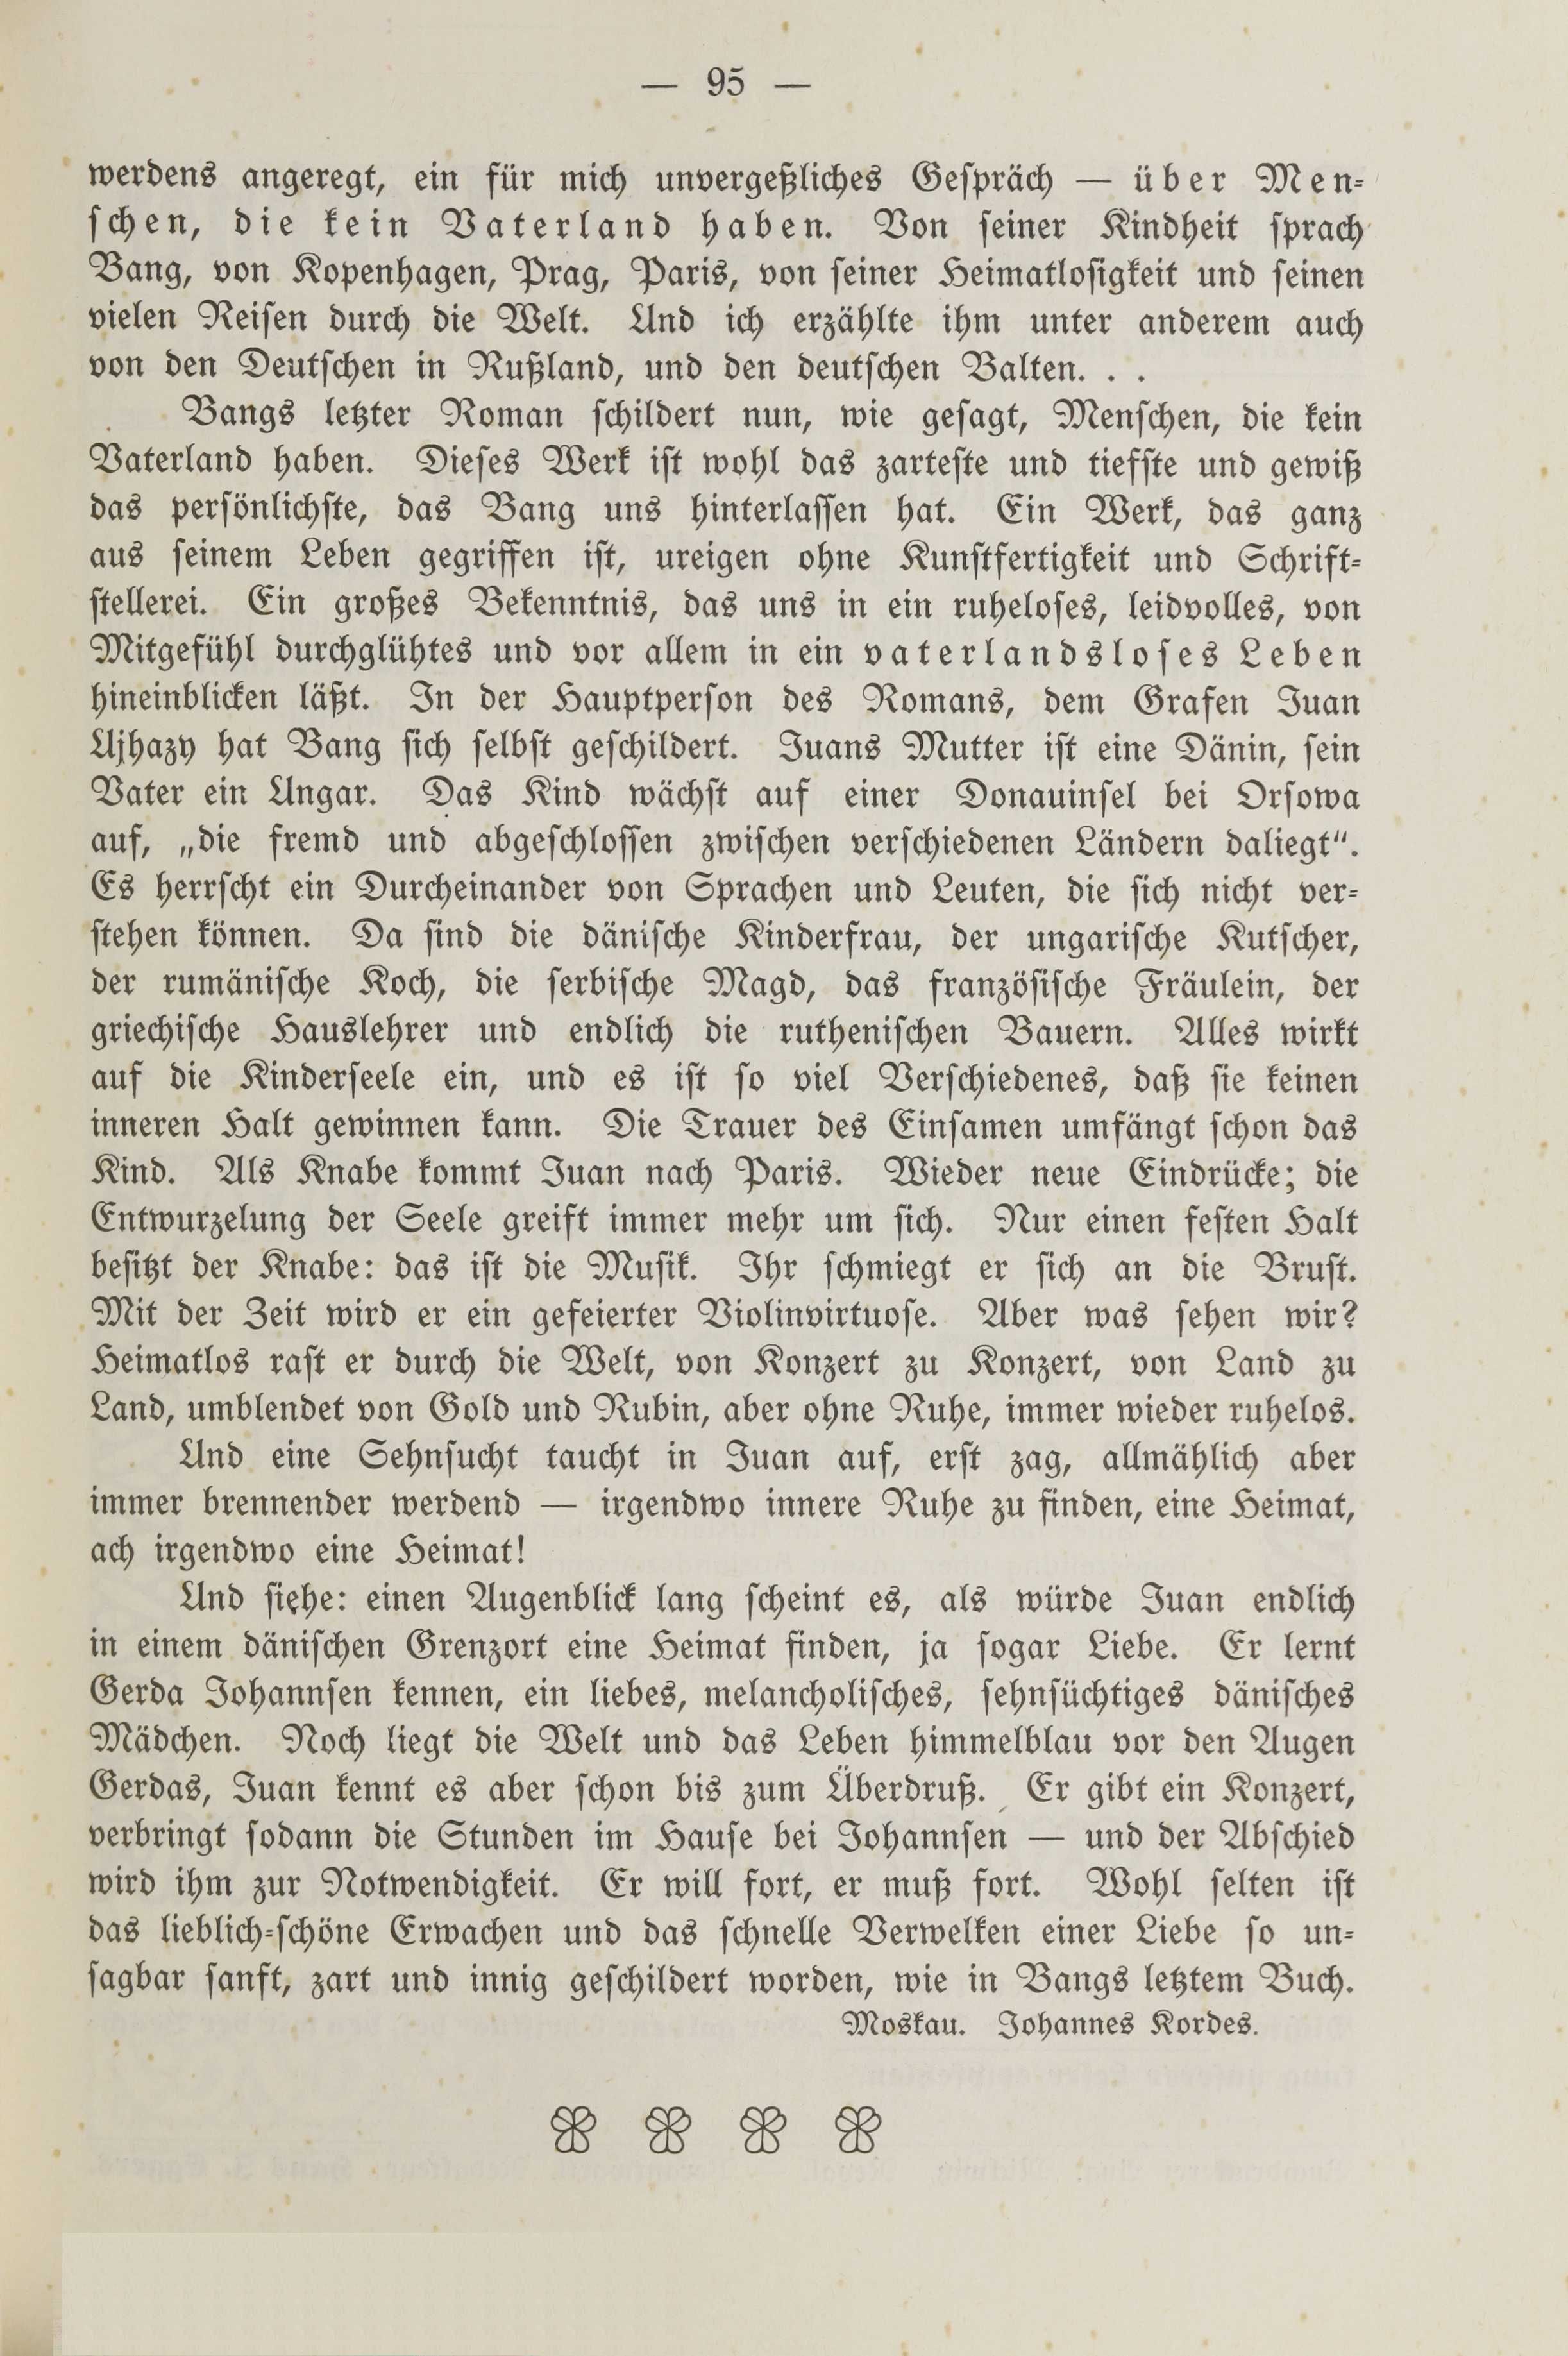 Deutsche Monatsschrift für Russland [2] (1913) | 99. (95) Põhitekst